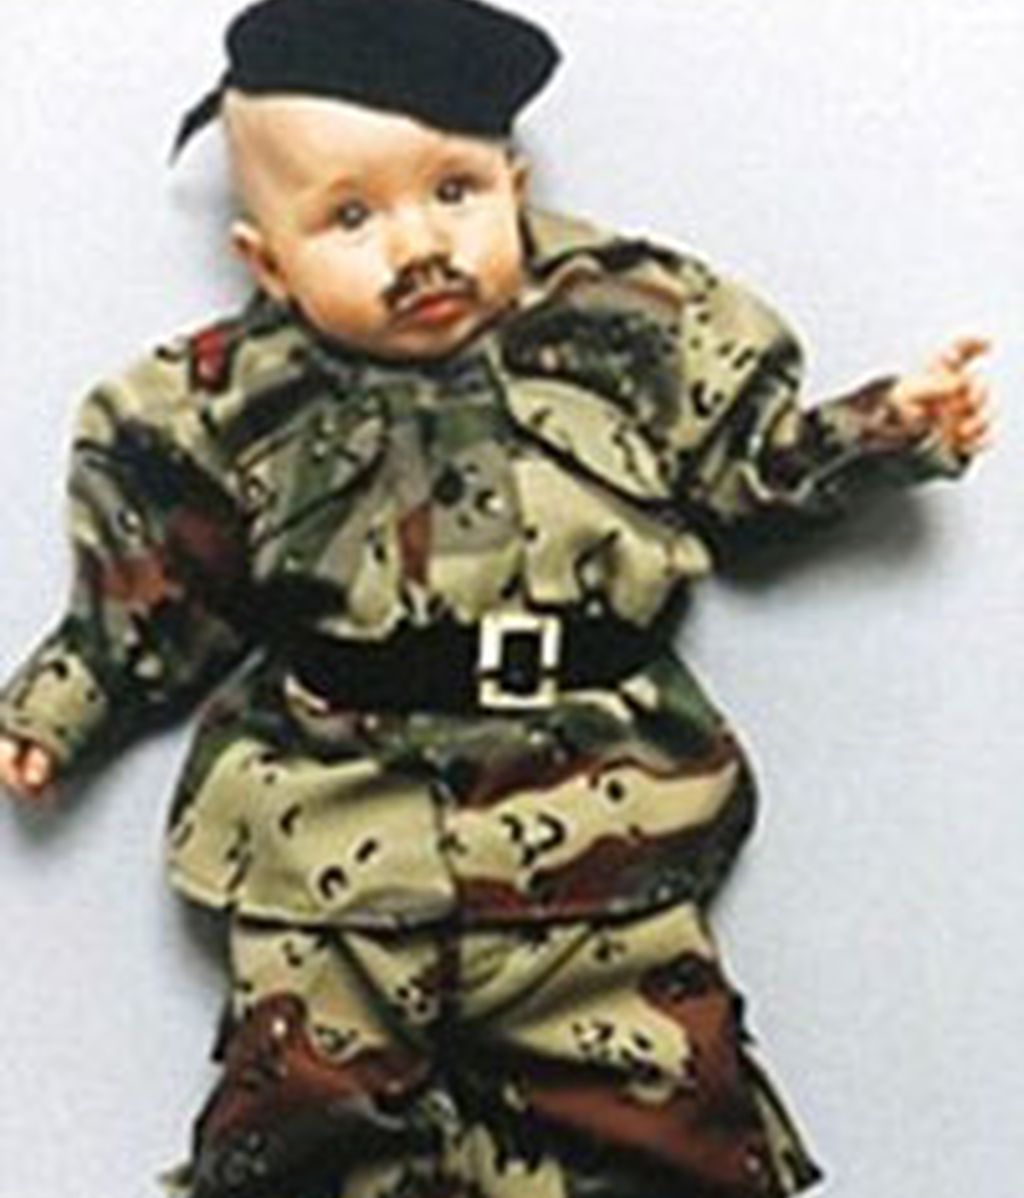 Un bebe disfrazado de Hitler... ¿arte?